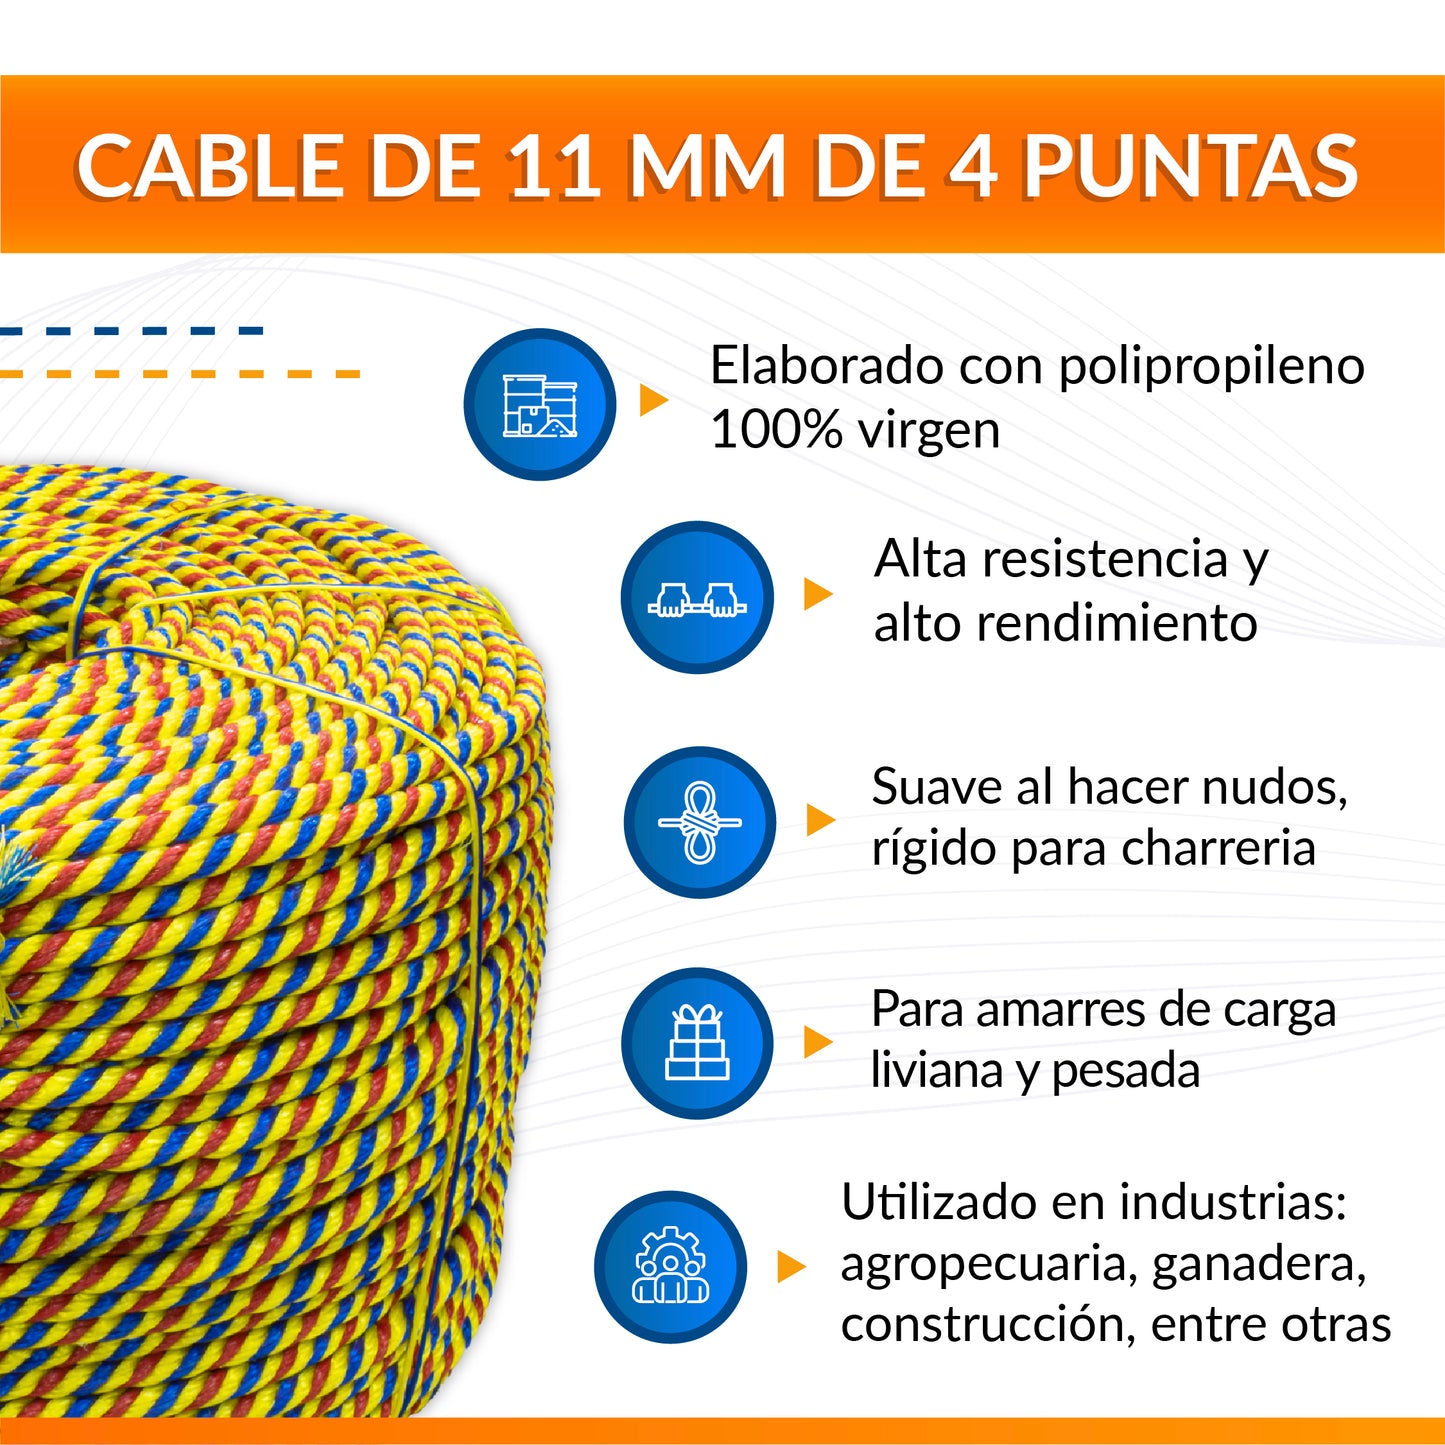 Cable de Polipropileno de 11 mm con 4 puntas combinado